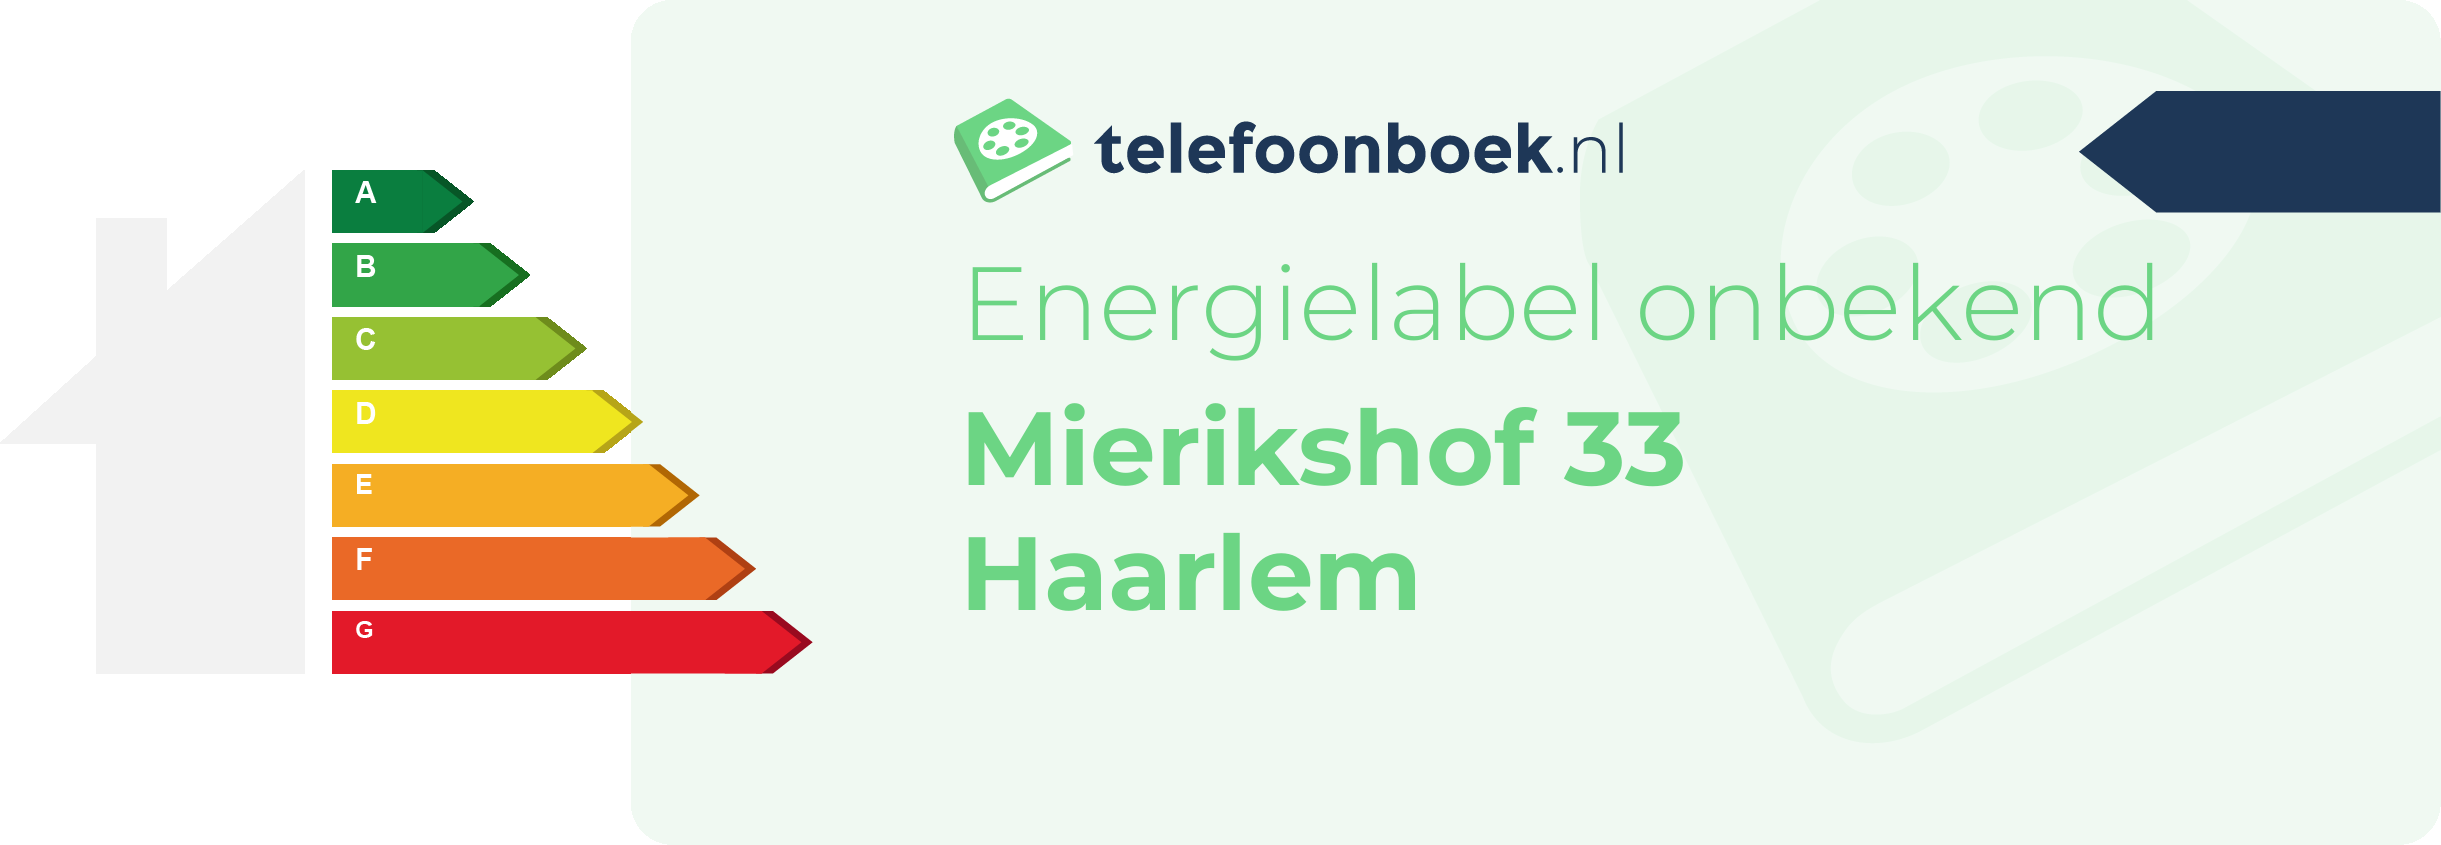 Energielabel Mierikshof 33 Haarlem